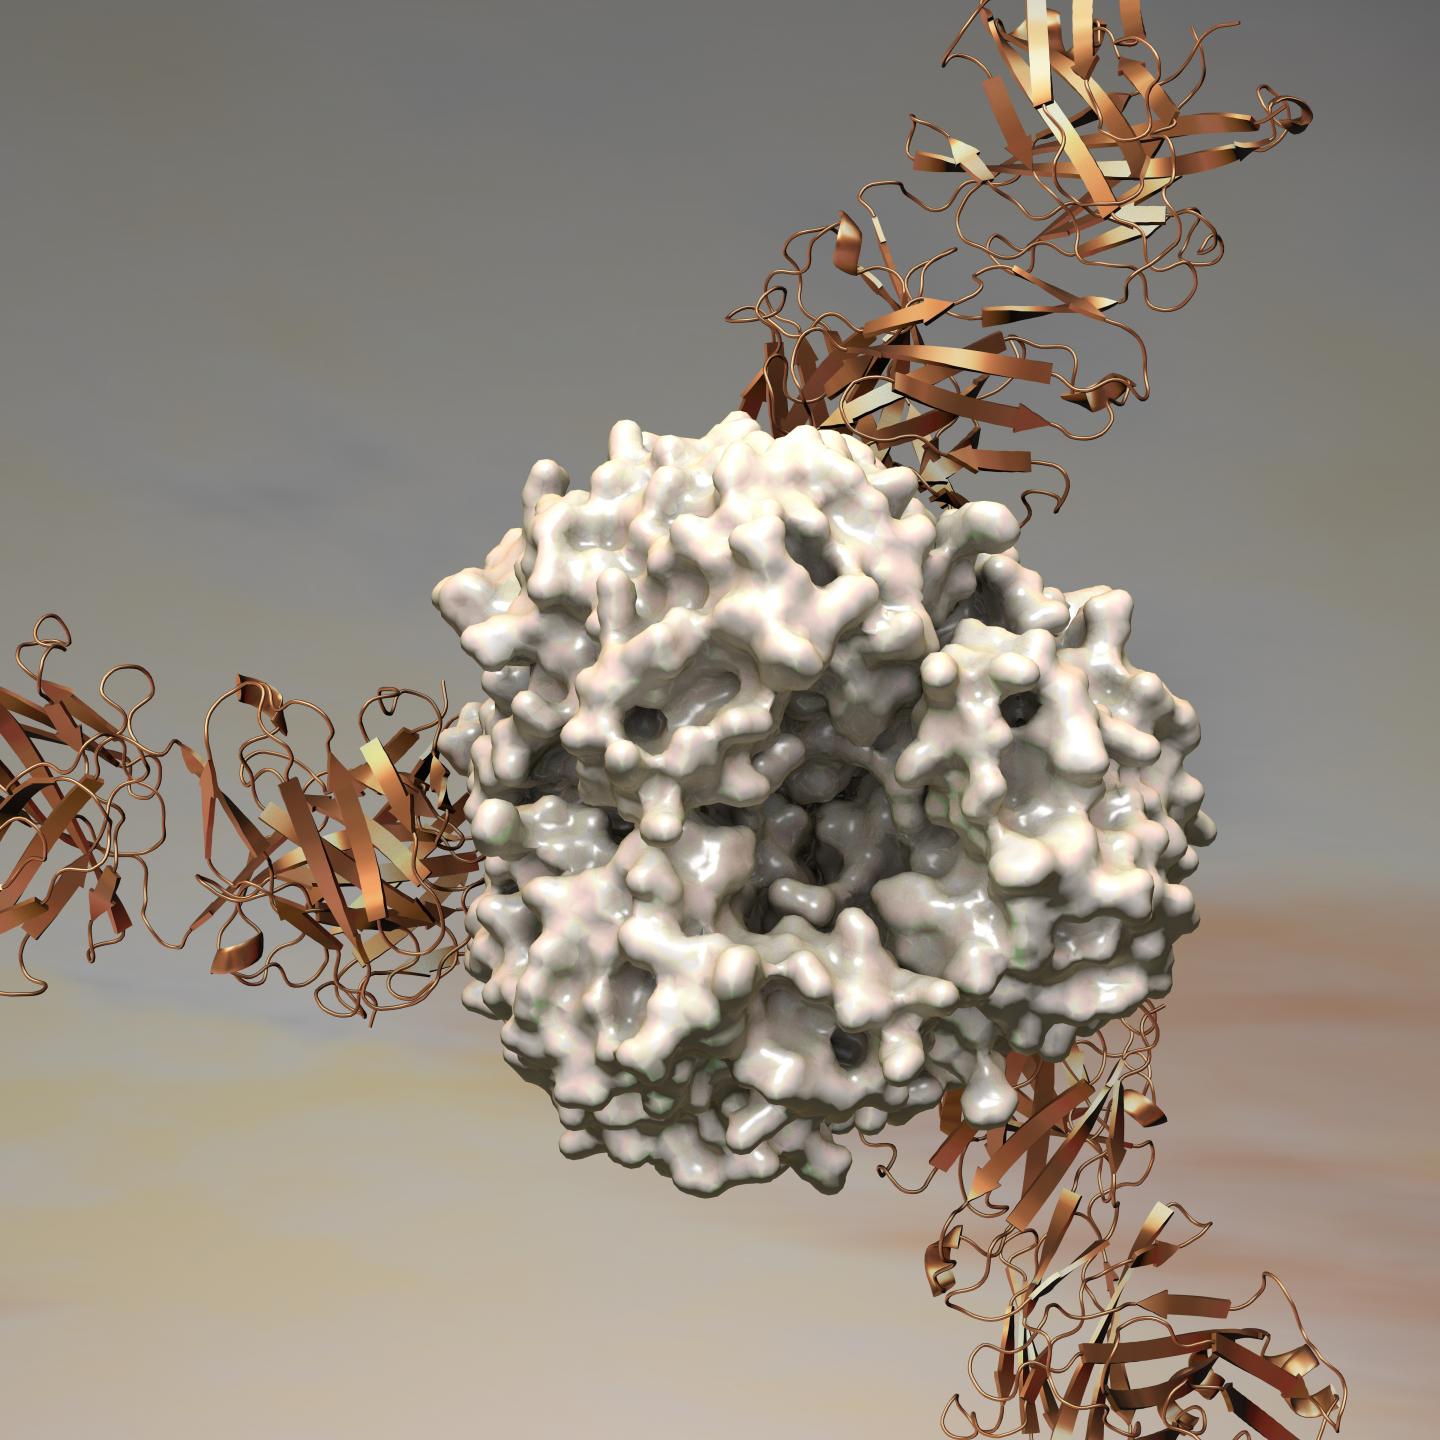 Lassa Virus' Soft Spot Revealed